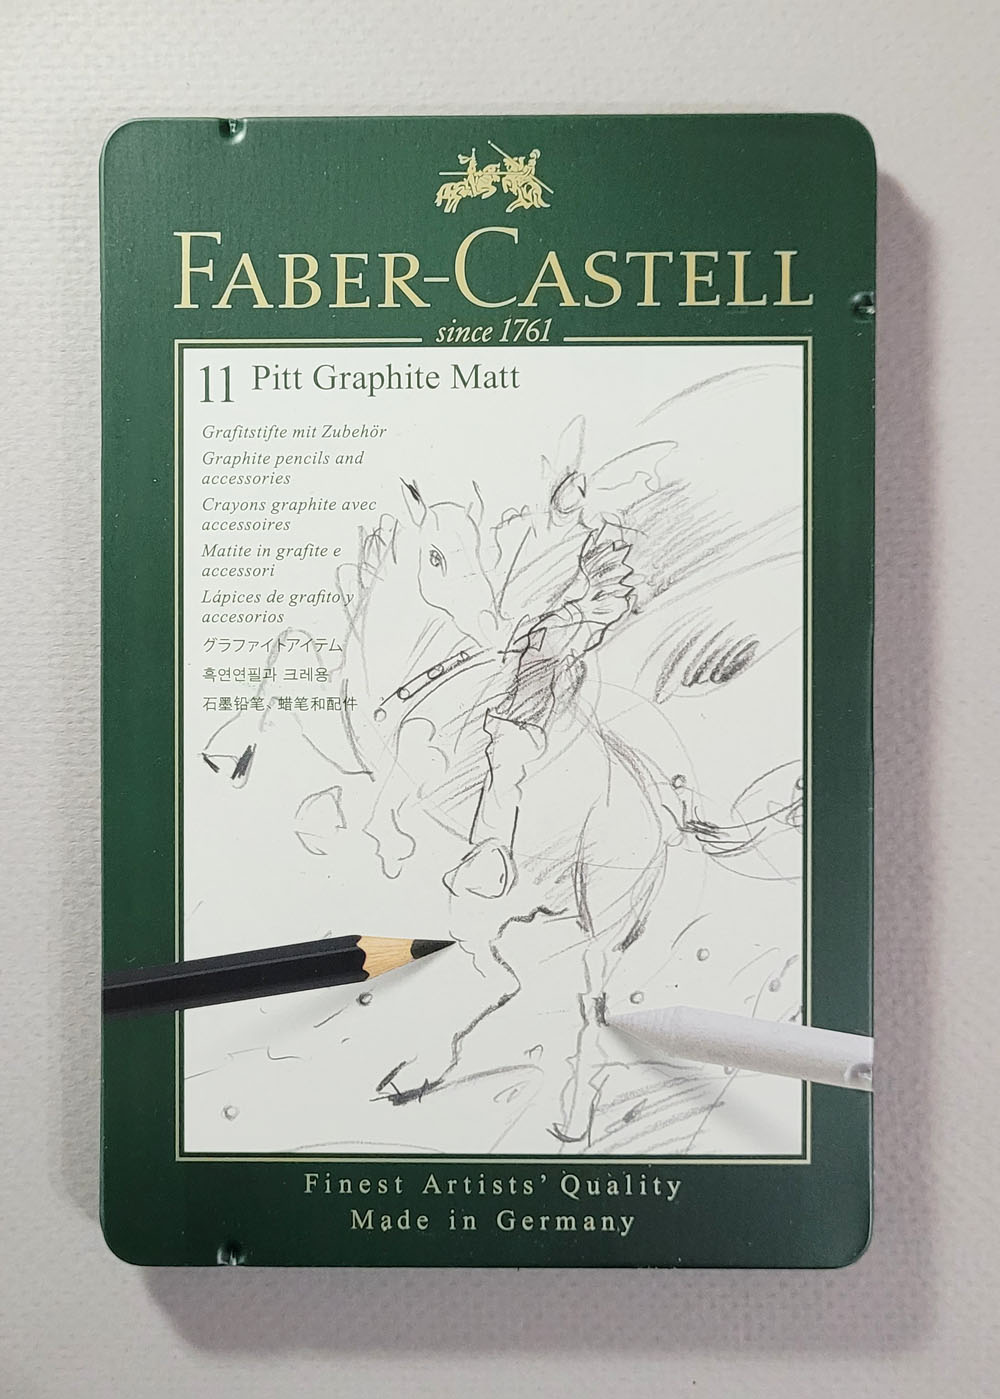 Faber Castell Pitt Graphite Matt Pencils Review  Faber Castell Graphite  Pencils — The Art Gear Guide